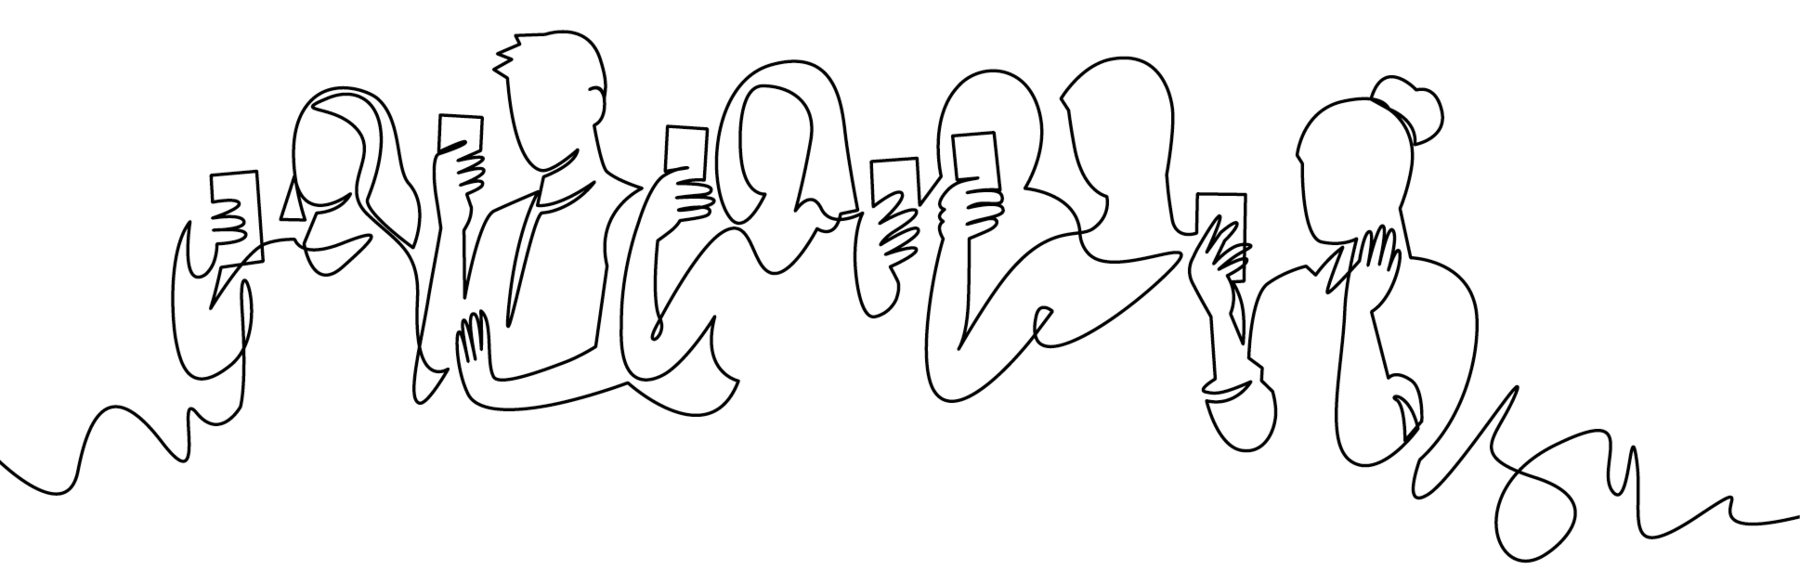 Ilustração em preto e branco. Silhuetas de seis pessoas, uma ao lado da outra conectadas por contorno, cada uma segurando um celular na mão direita. Veem-se mulheres e homens, com celular de frente para o rosto.